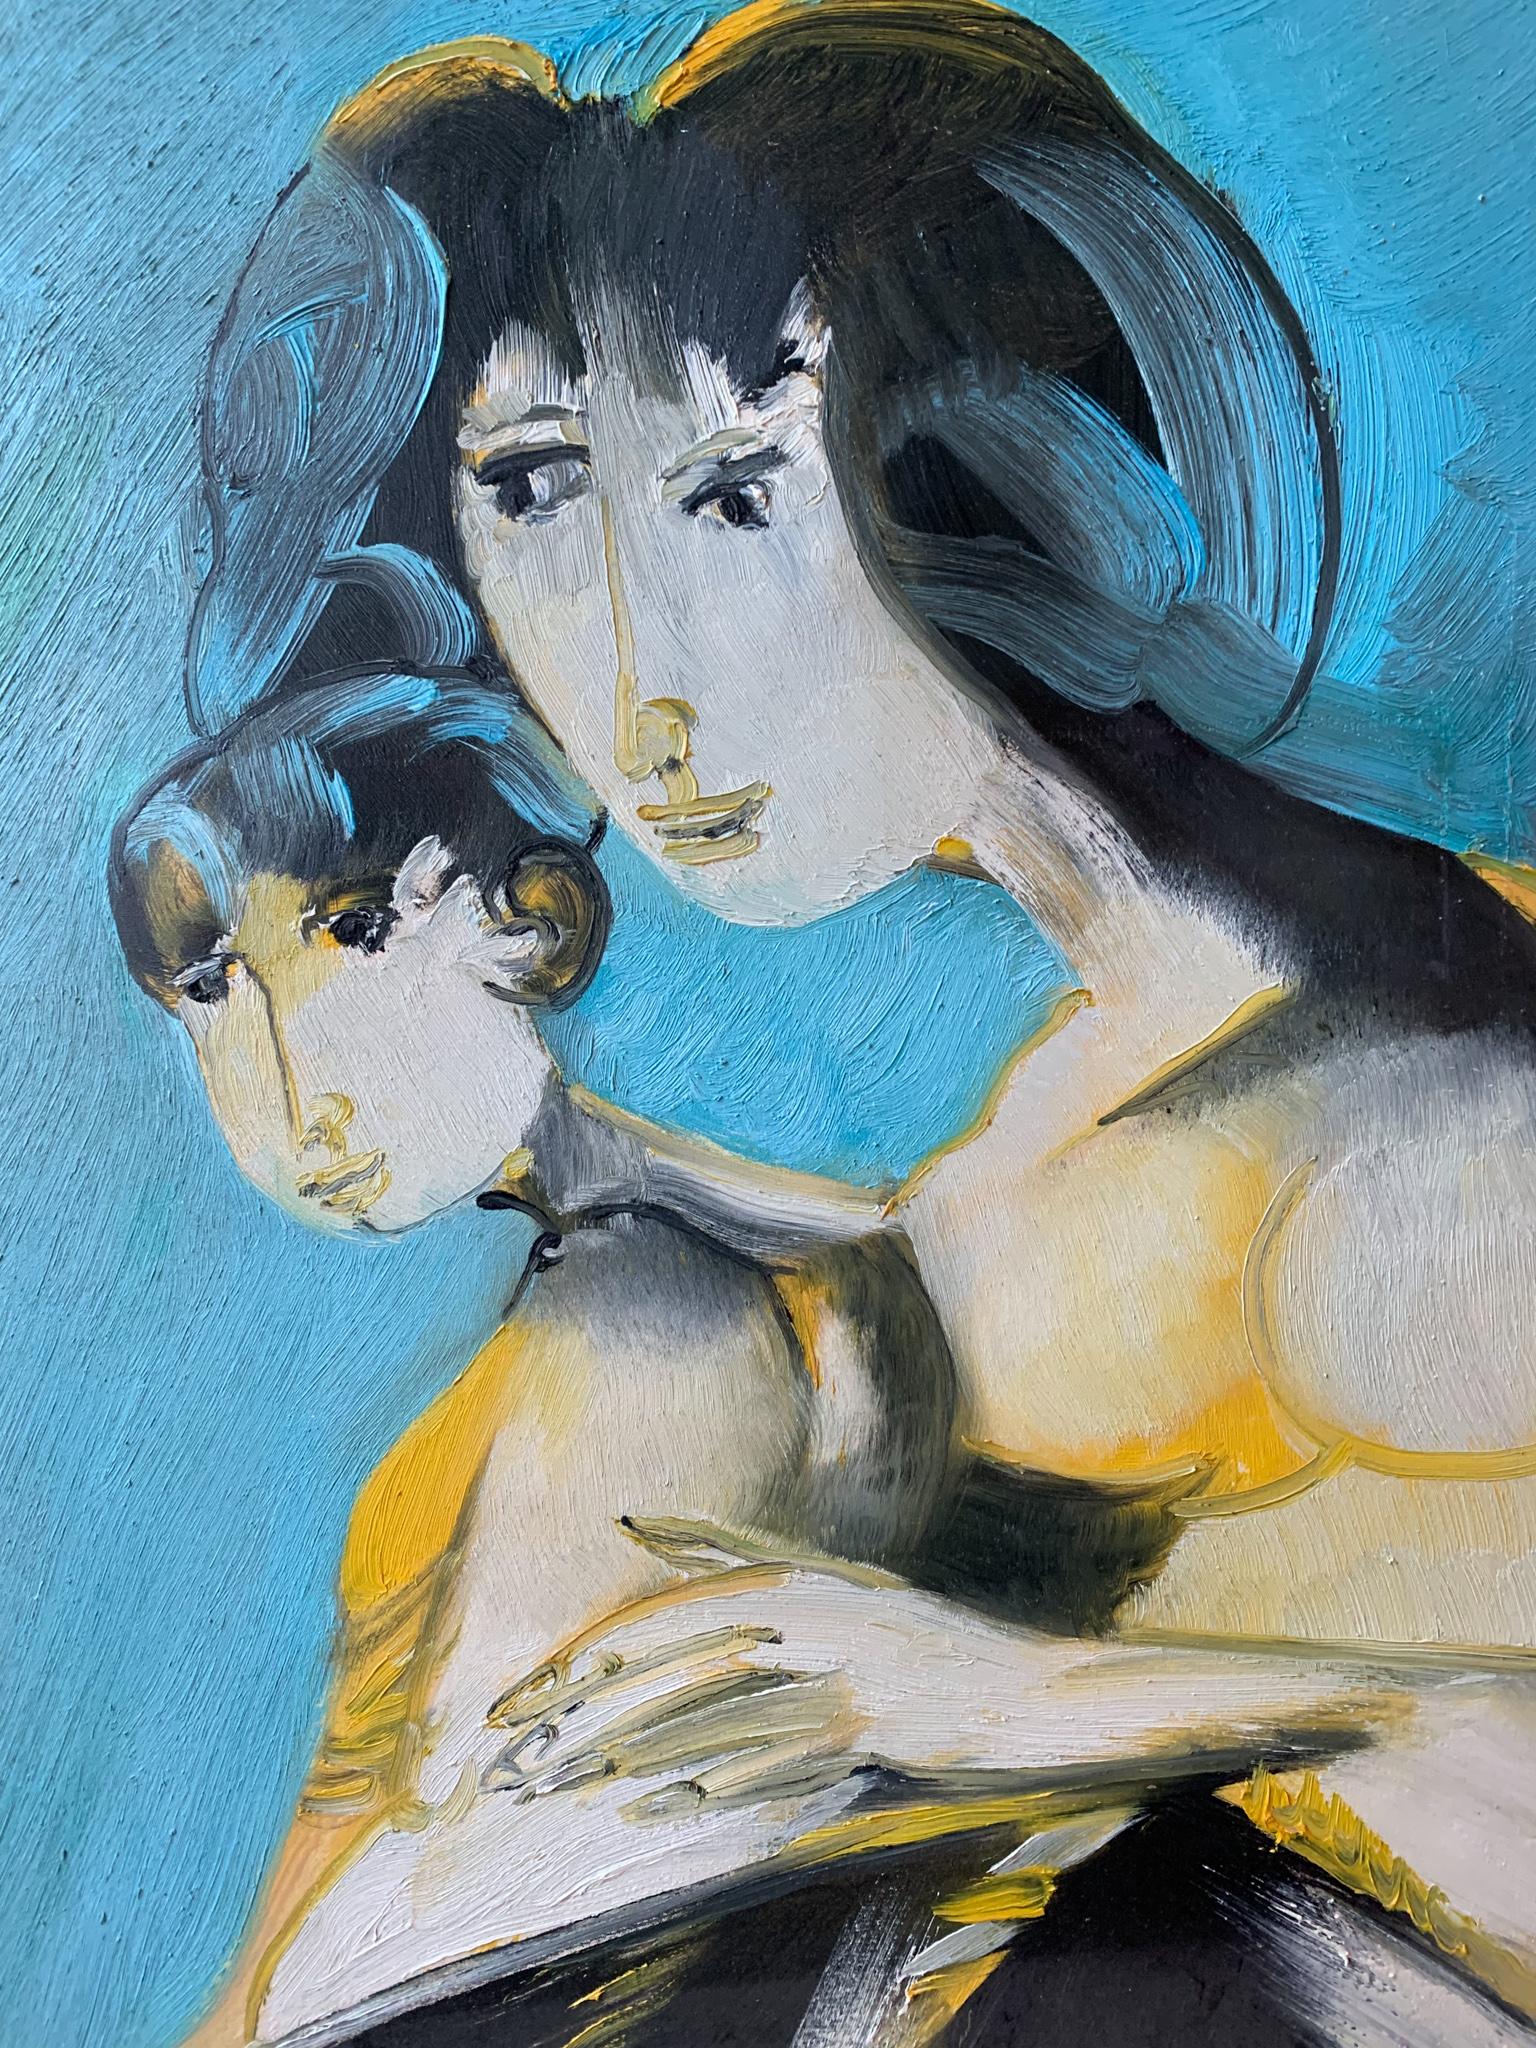 Peinture à l'huile sur toile représentant une maternité, créée par Remo Brindisi dans les années 1970. Les peintures originales de l'artiste sur le thème de la maternité sont désormais rares à trouver, surtout de cette taille. 

Ø cm 54 h cm